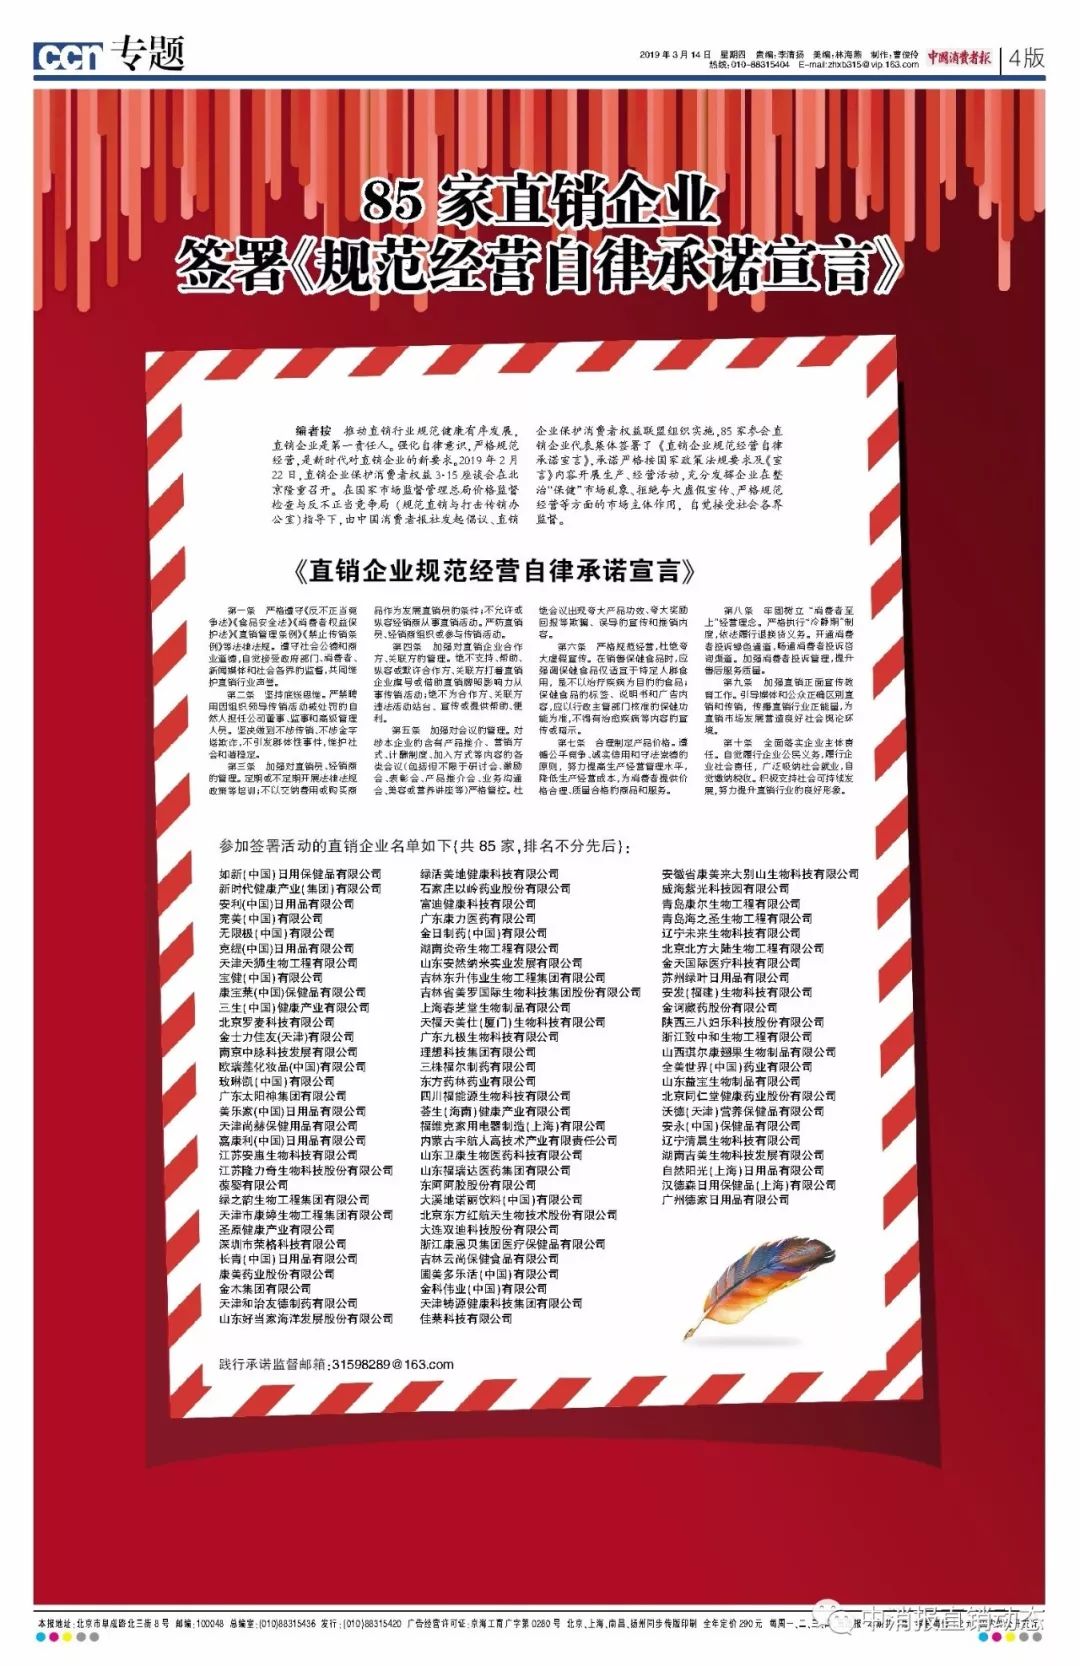 重磅！商务部公示以岭药业获得2018年首张直销牌照-独家报道-直销百科网 中国直销百科全书